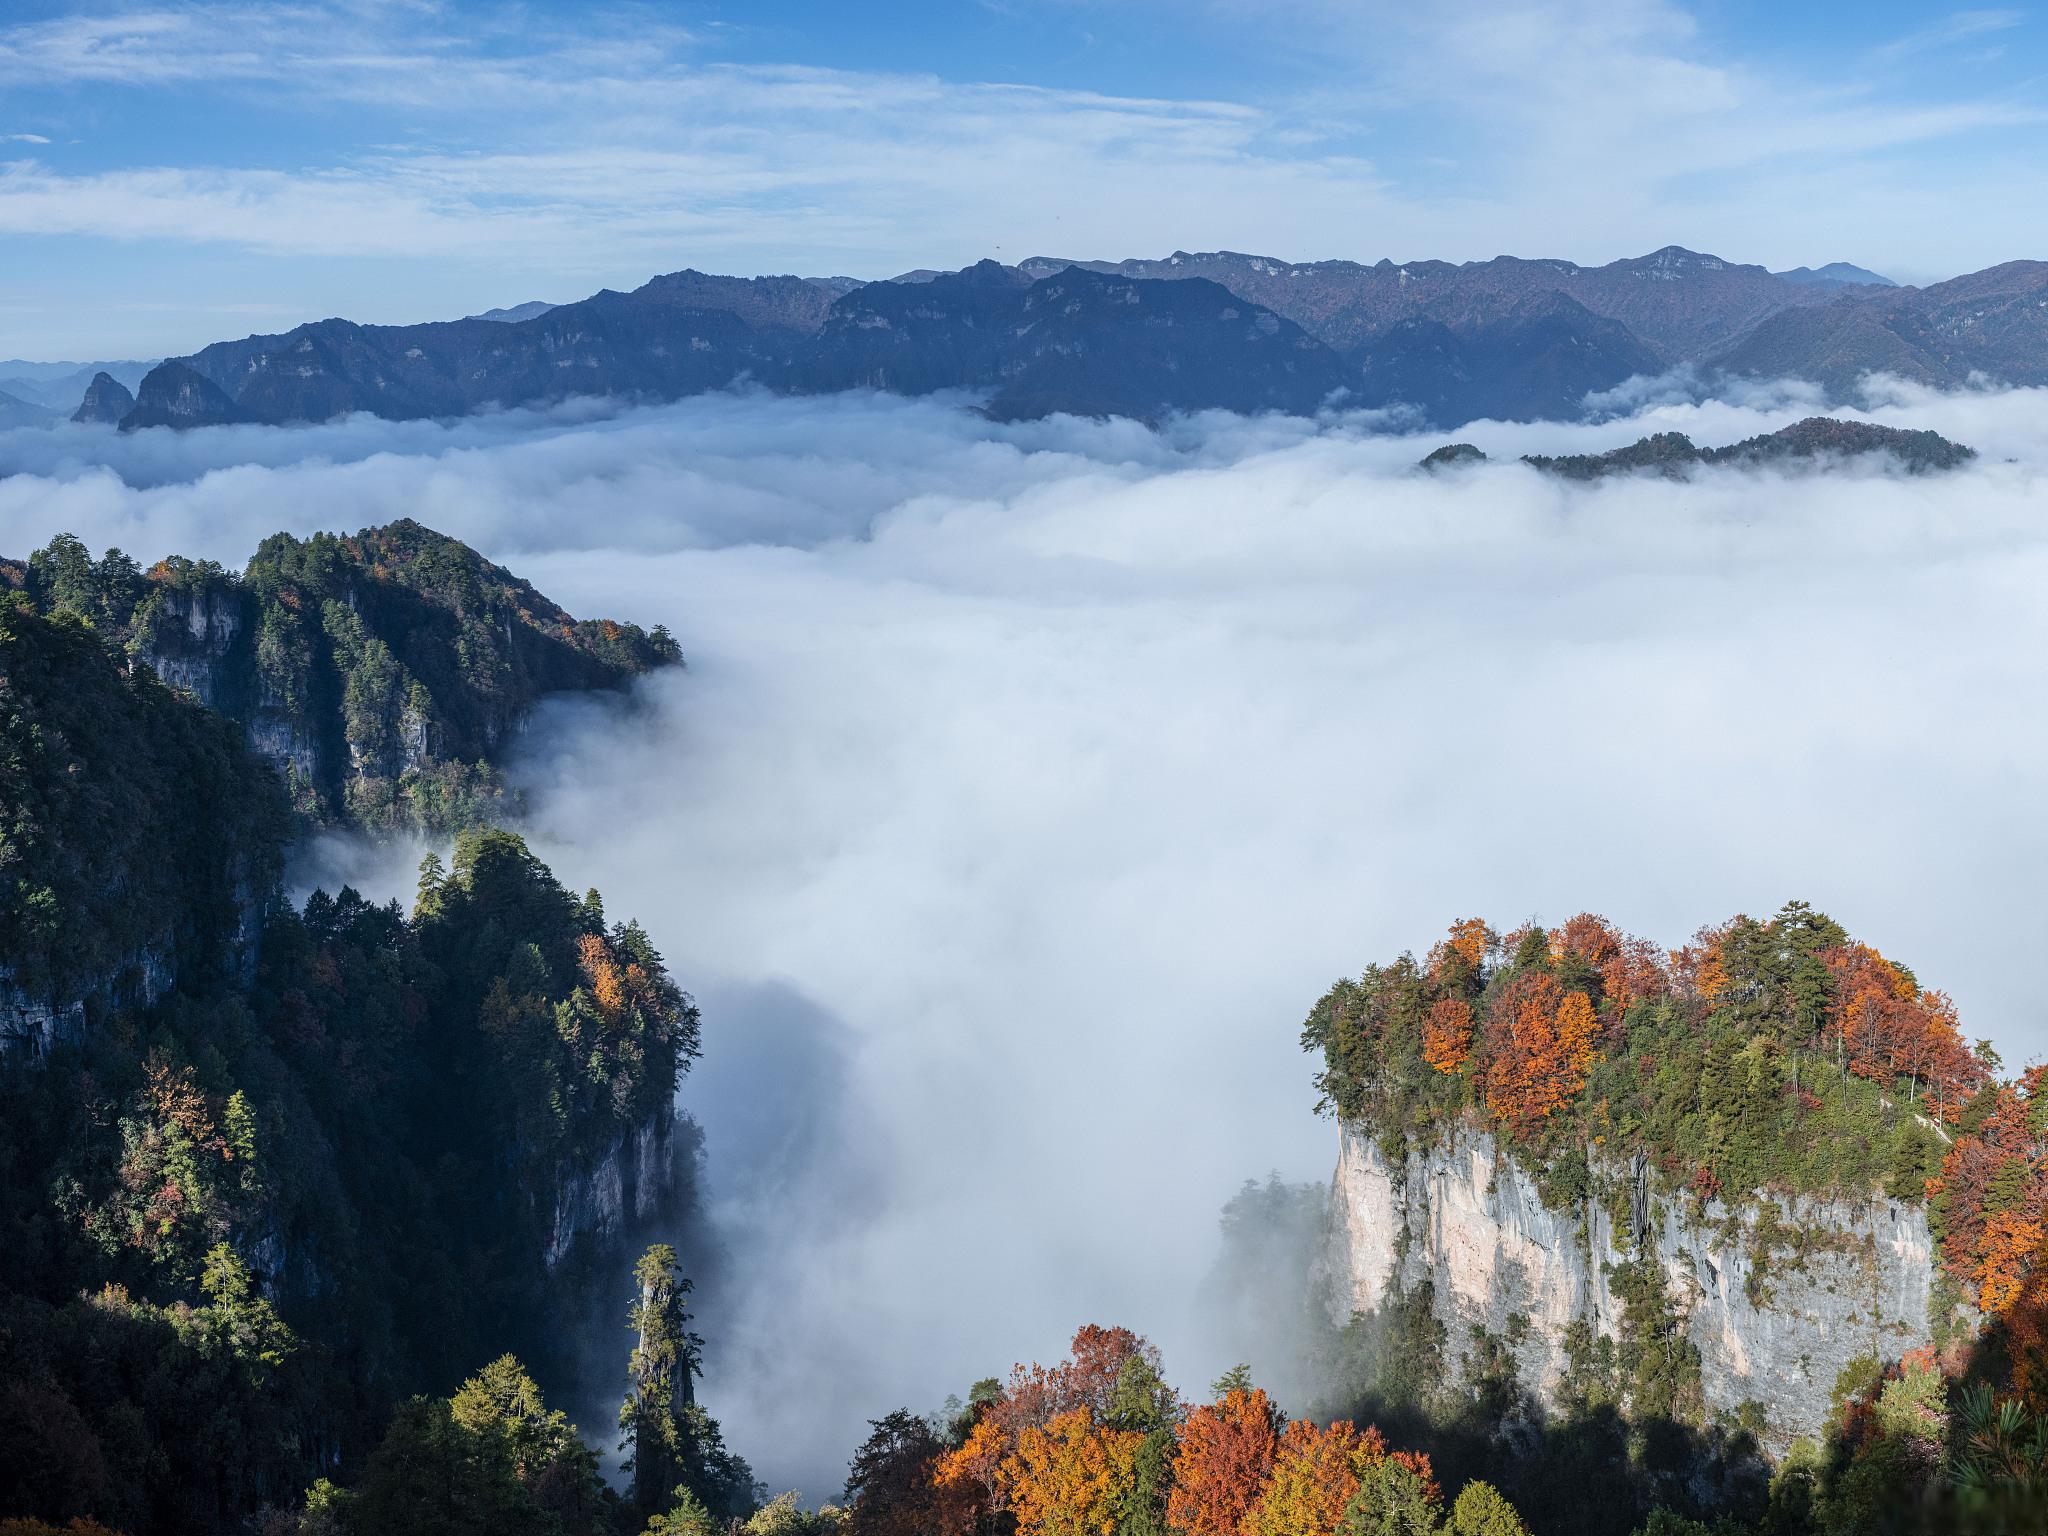 四川光雾山:5a景区 光雾山位于四川省巴中市南江县北部,是川陕两省的